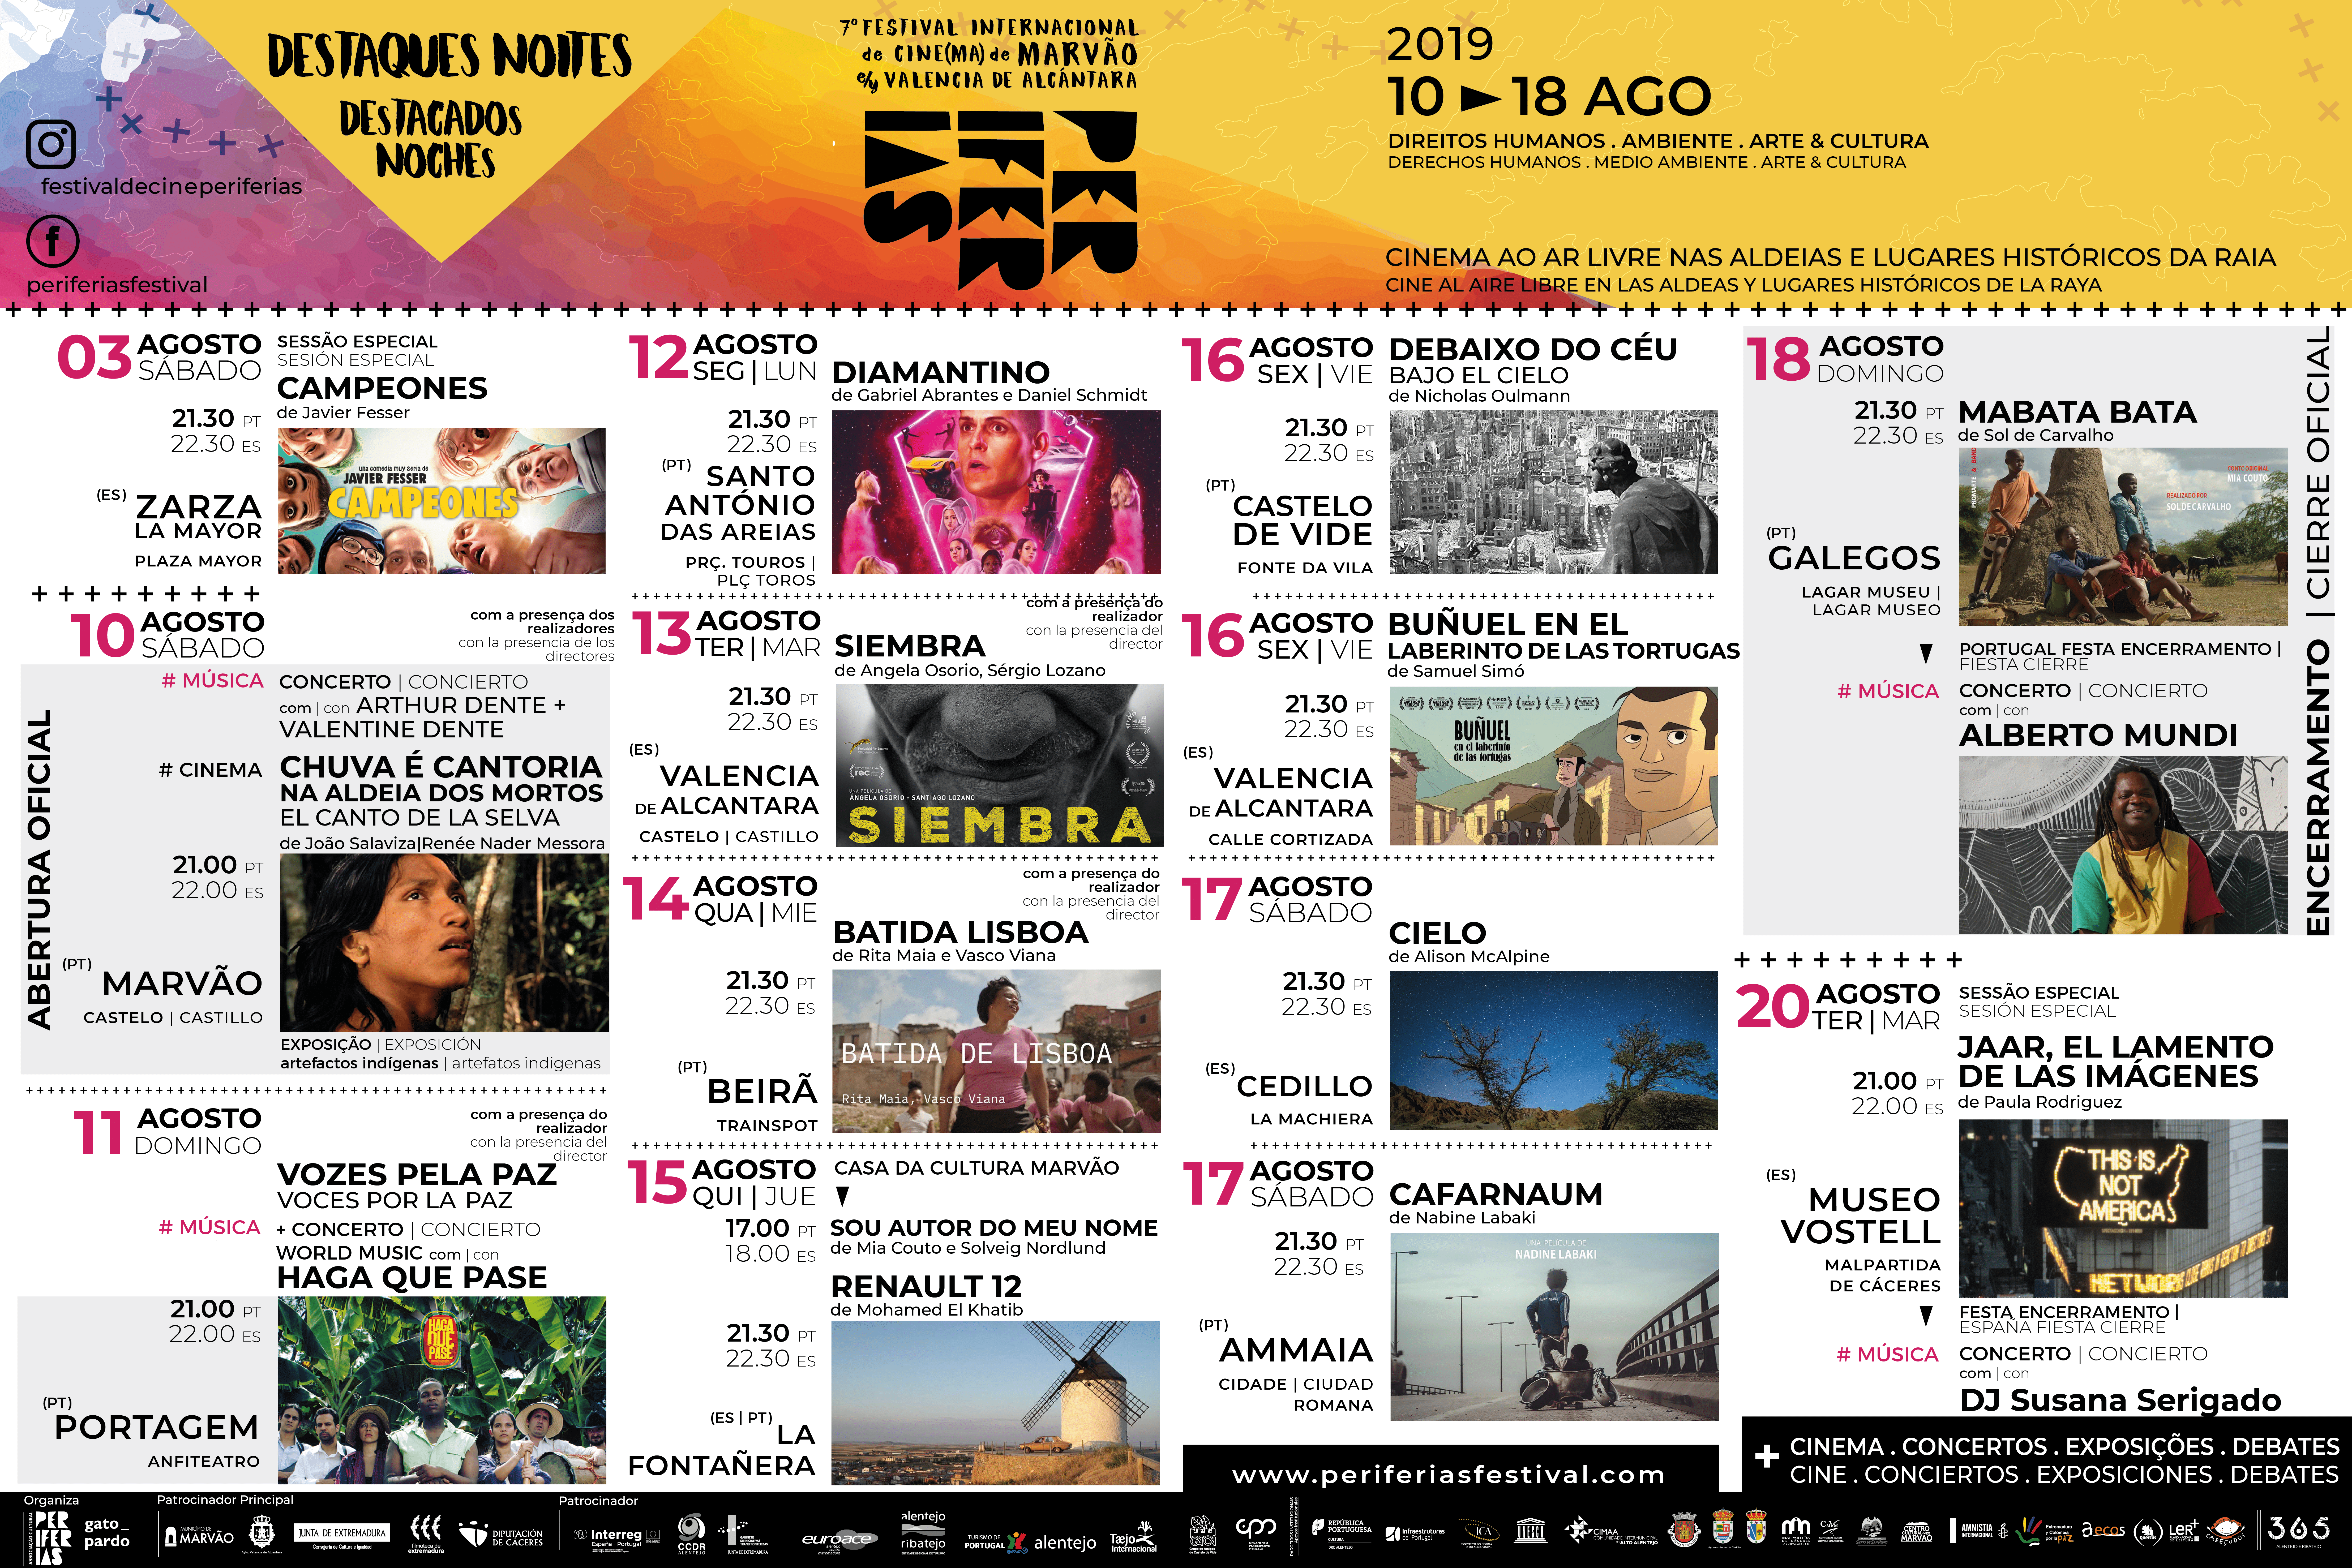 Marvão, Valencia de Alcántara, Periferias, cultura, cine, Extremadura Portugal